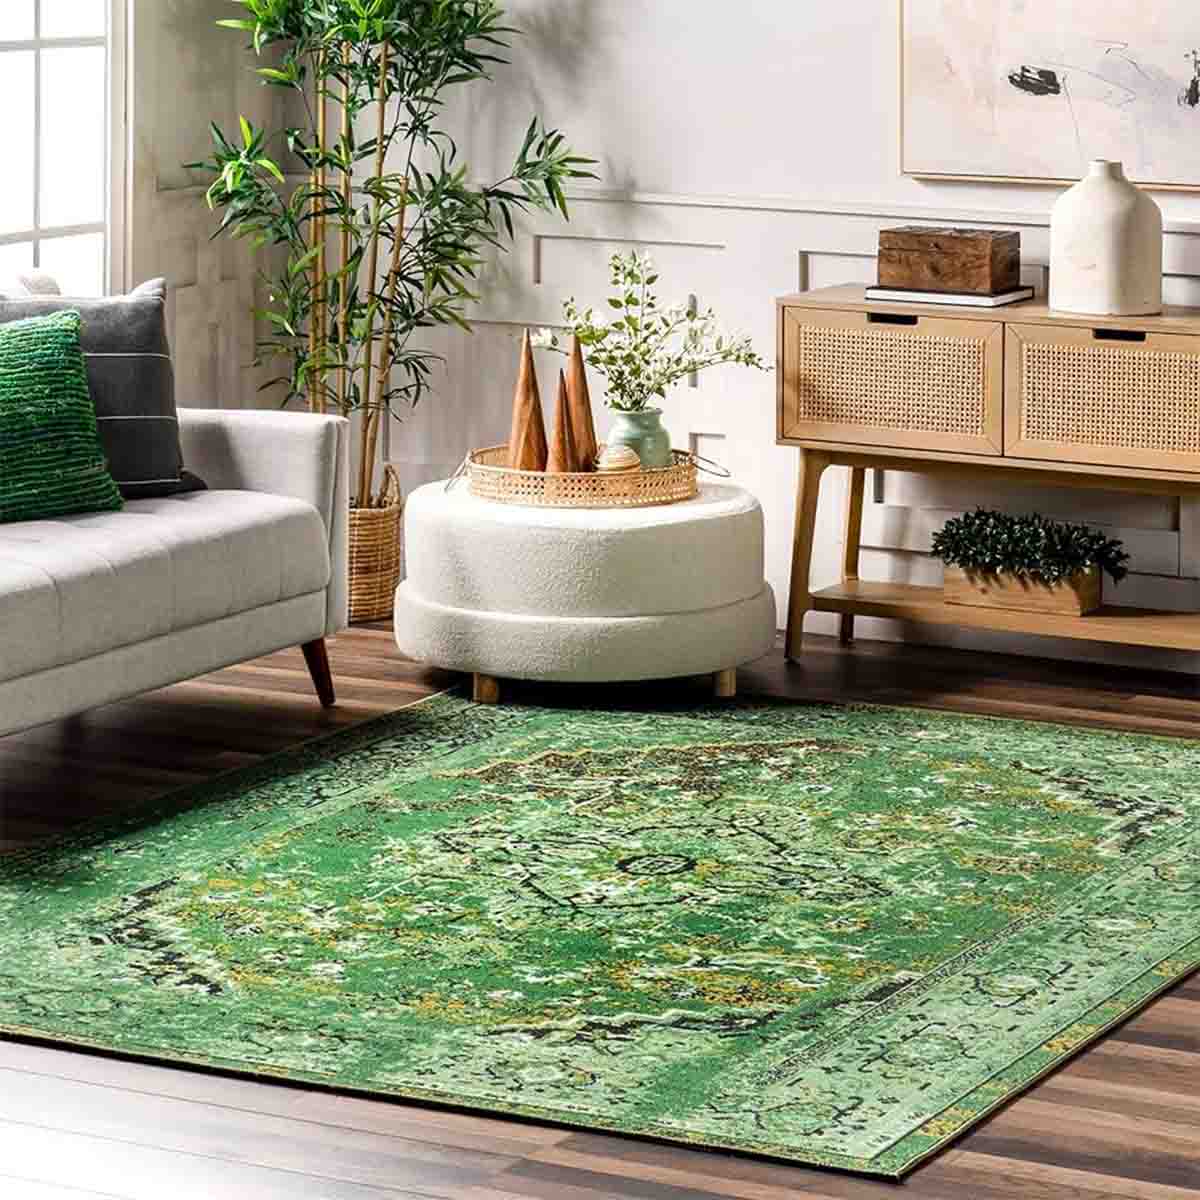 فرش جدید با رنگ زمینه سبز جسورانه